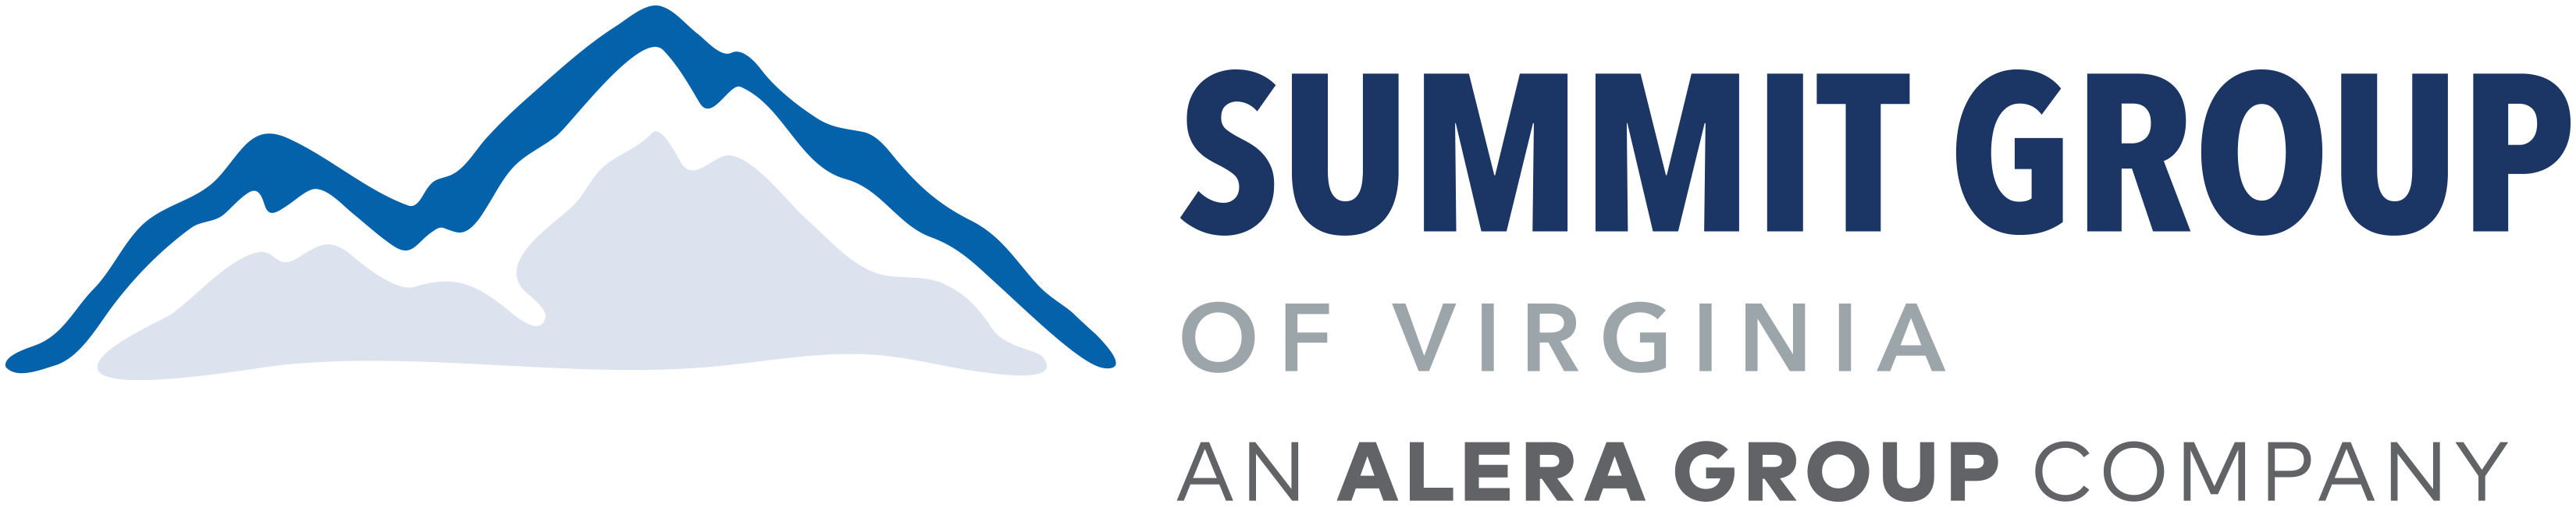 Summit Group of Virginia